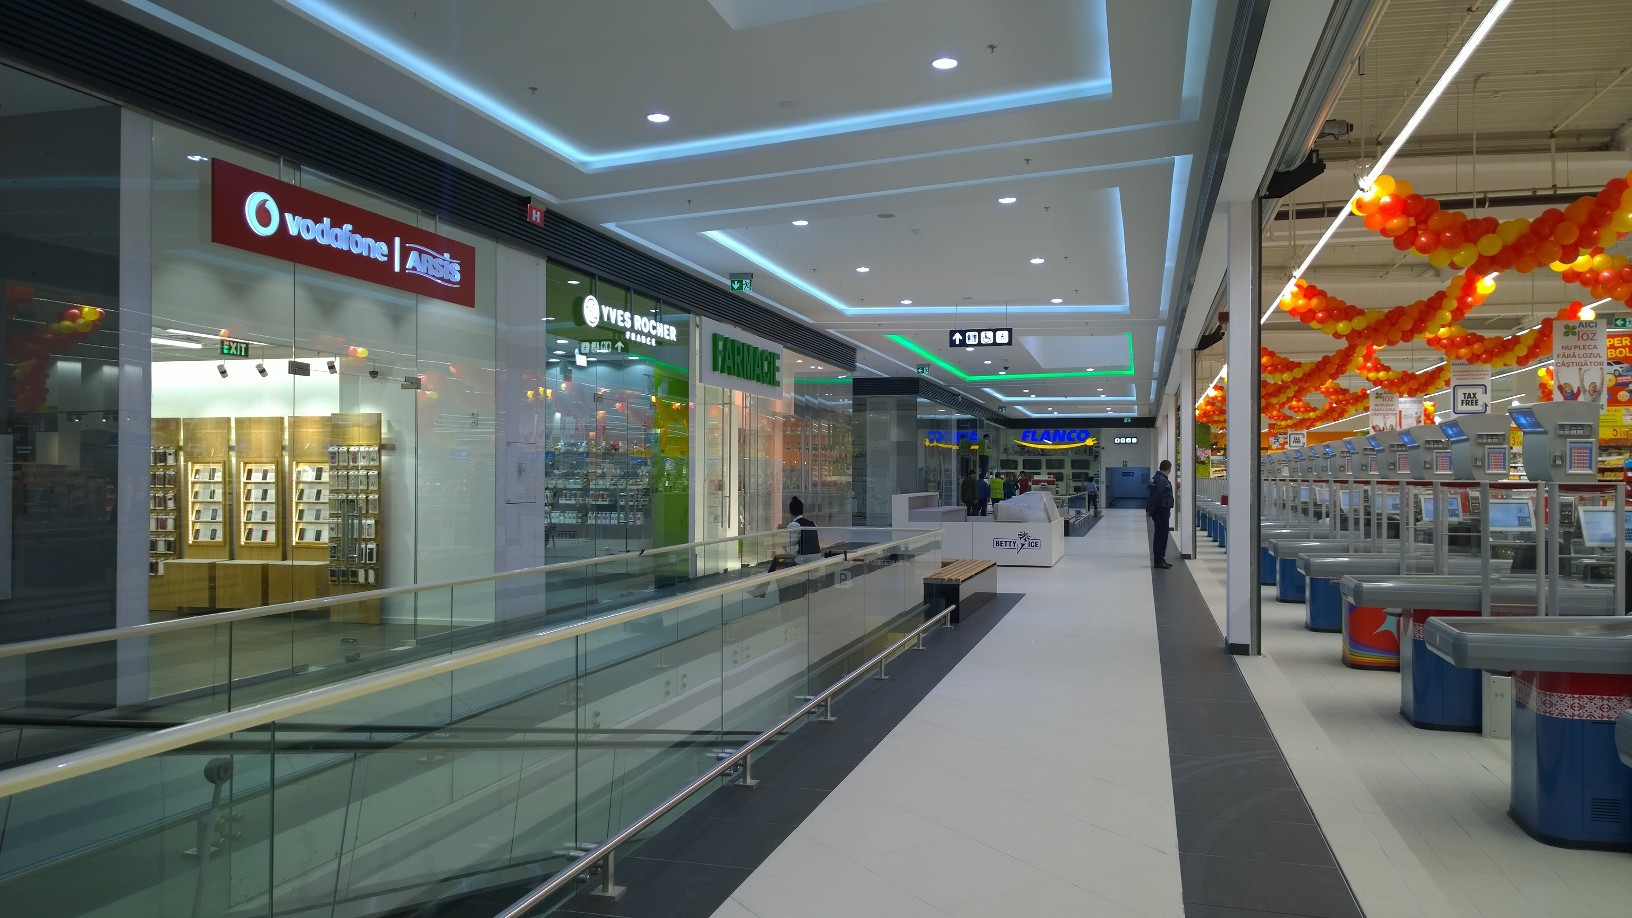 NEPI deschide mallul din Târgu-Jiu, o investiţie de 30 mil. euro cu cinematograf multiplex, Carrefour şi H&M